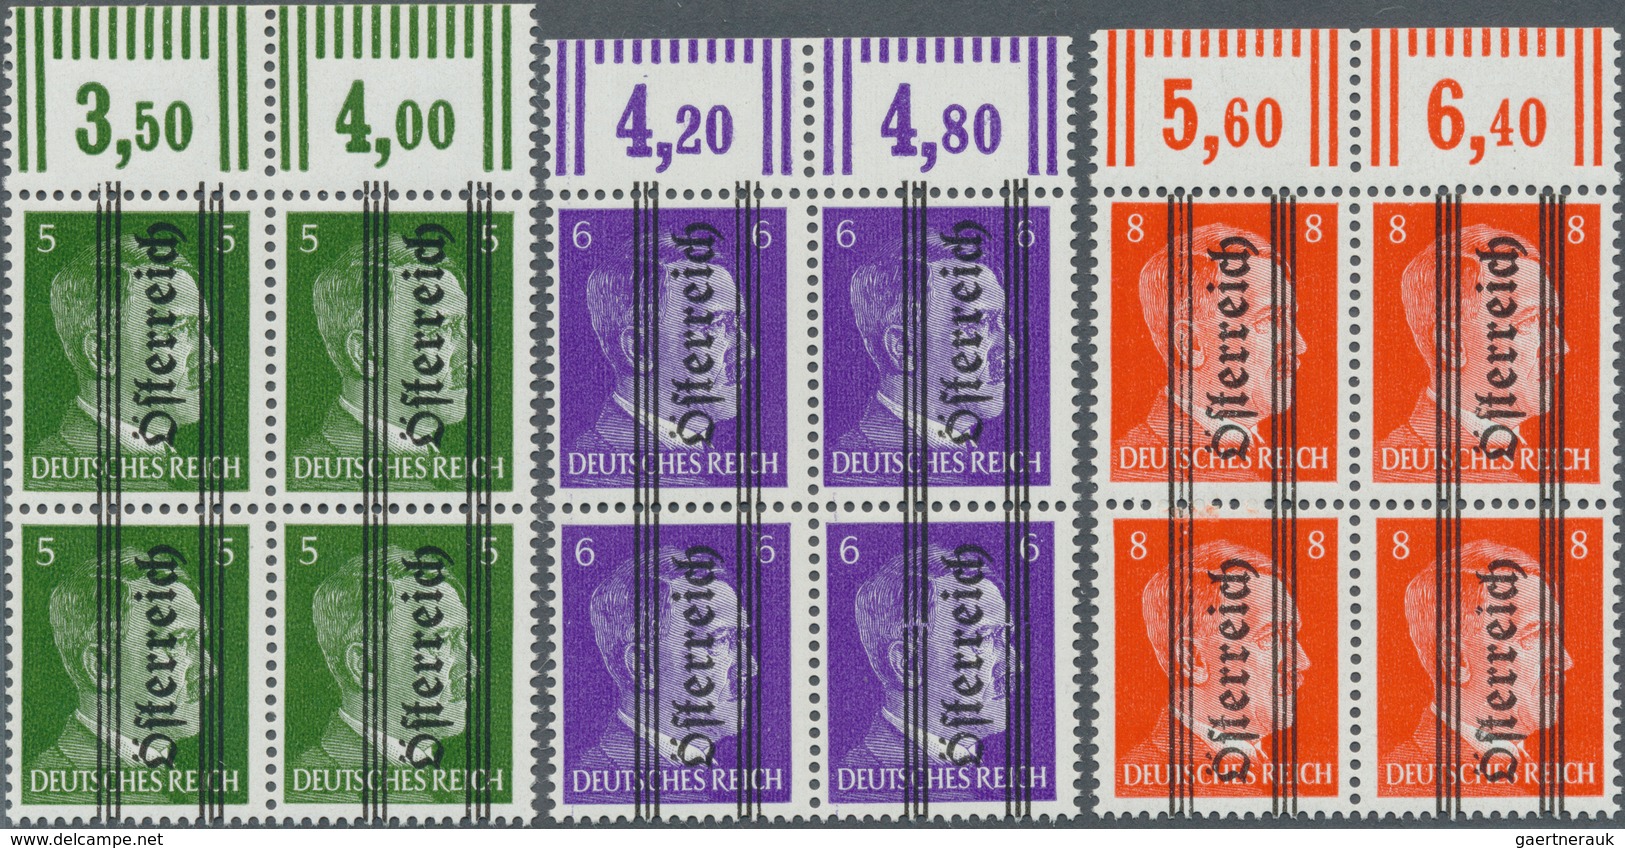 15419A Österreich: 1^945, Marken des Deutschen Reiches, postfrischer Luxus-Oberrand (sowie 683-684 mit Unte